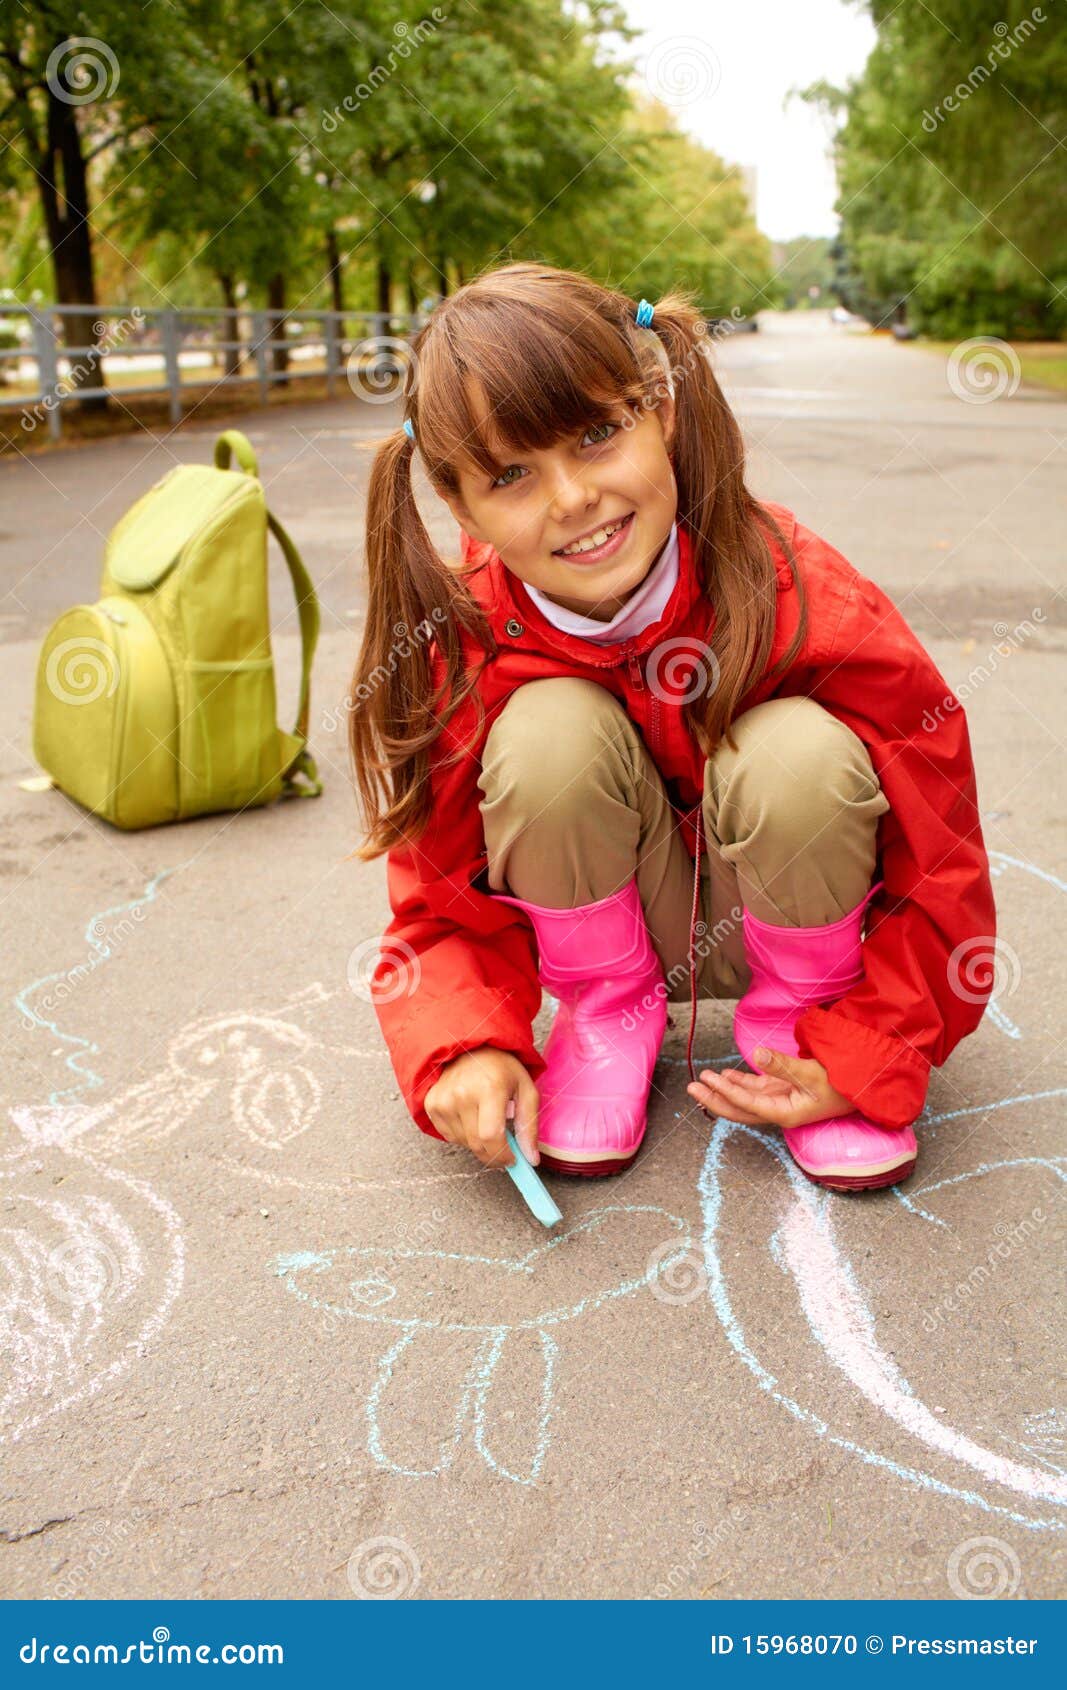 Где пописать девушкам. Девочка с мелками. Маленькие девочки на детской площадке. Девочка присела. Подростки рисуют на асфальте.